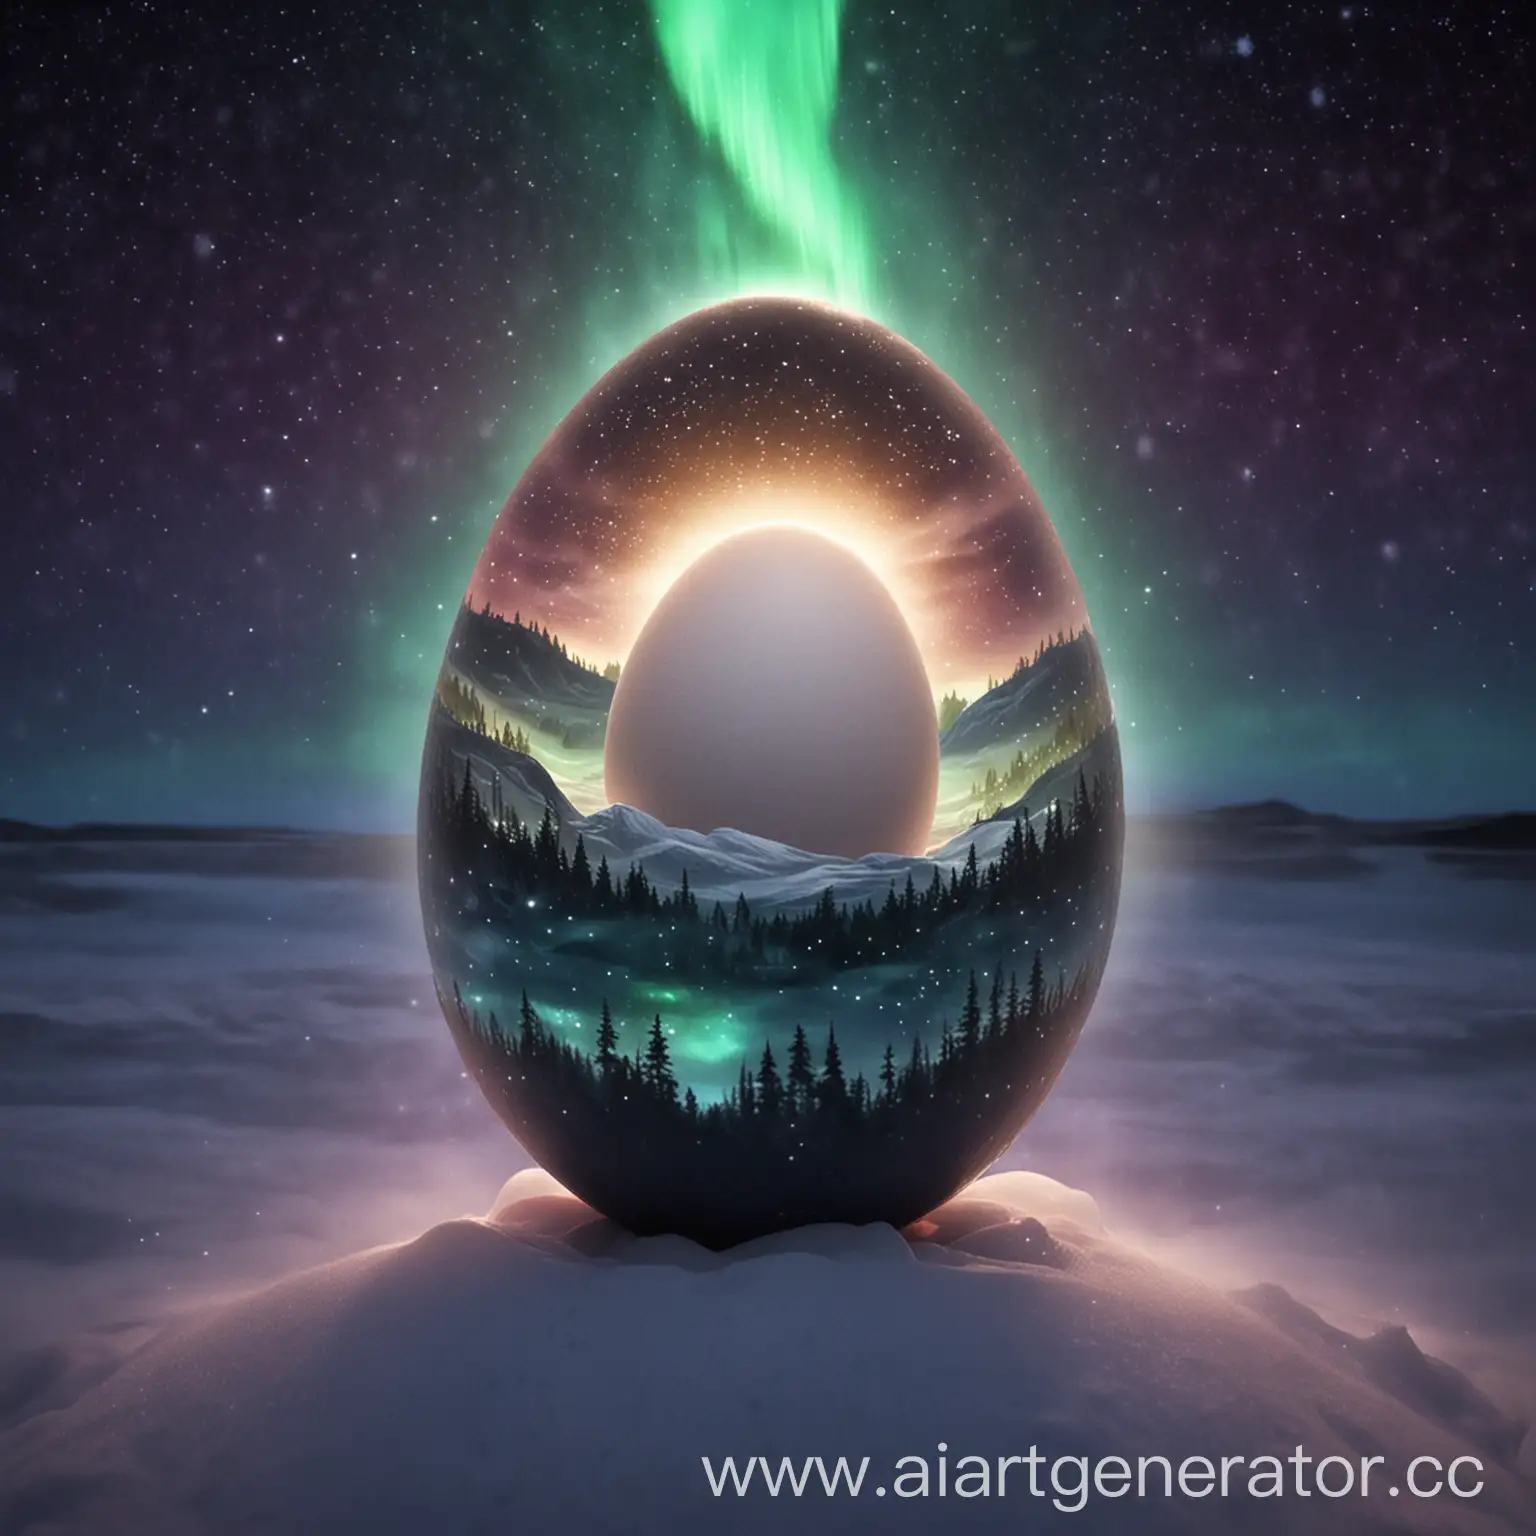 одно белое яйцо в другом яйце окружённое звездным северным сиянием
